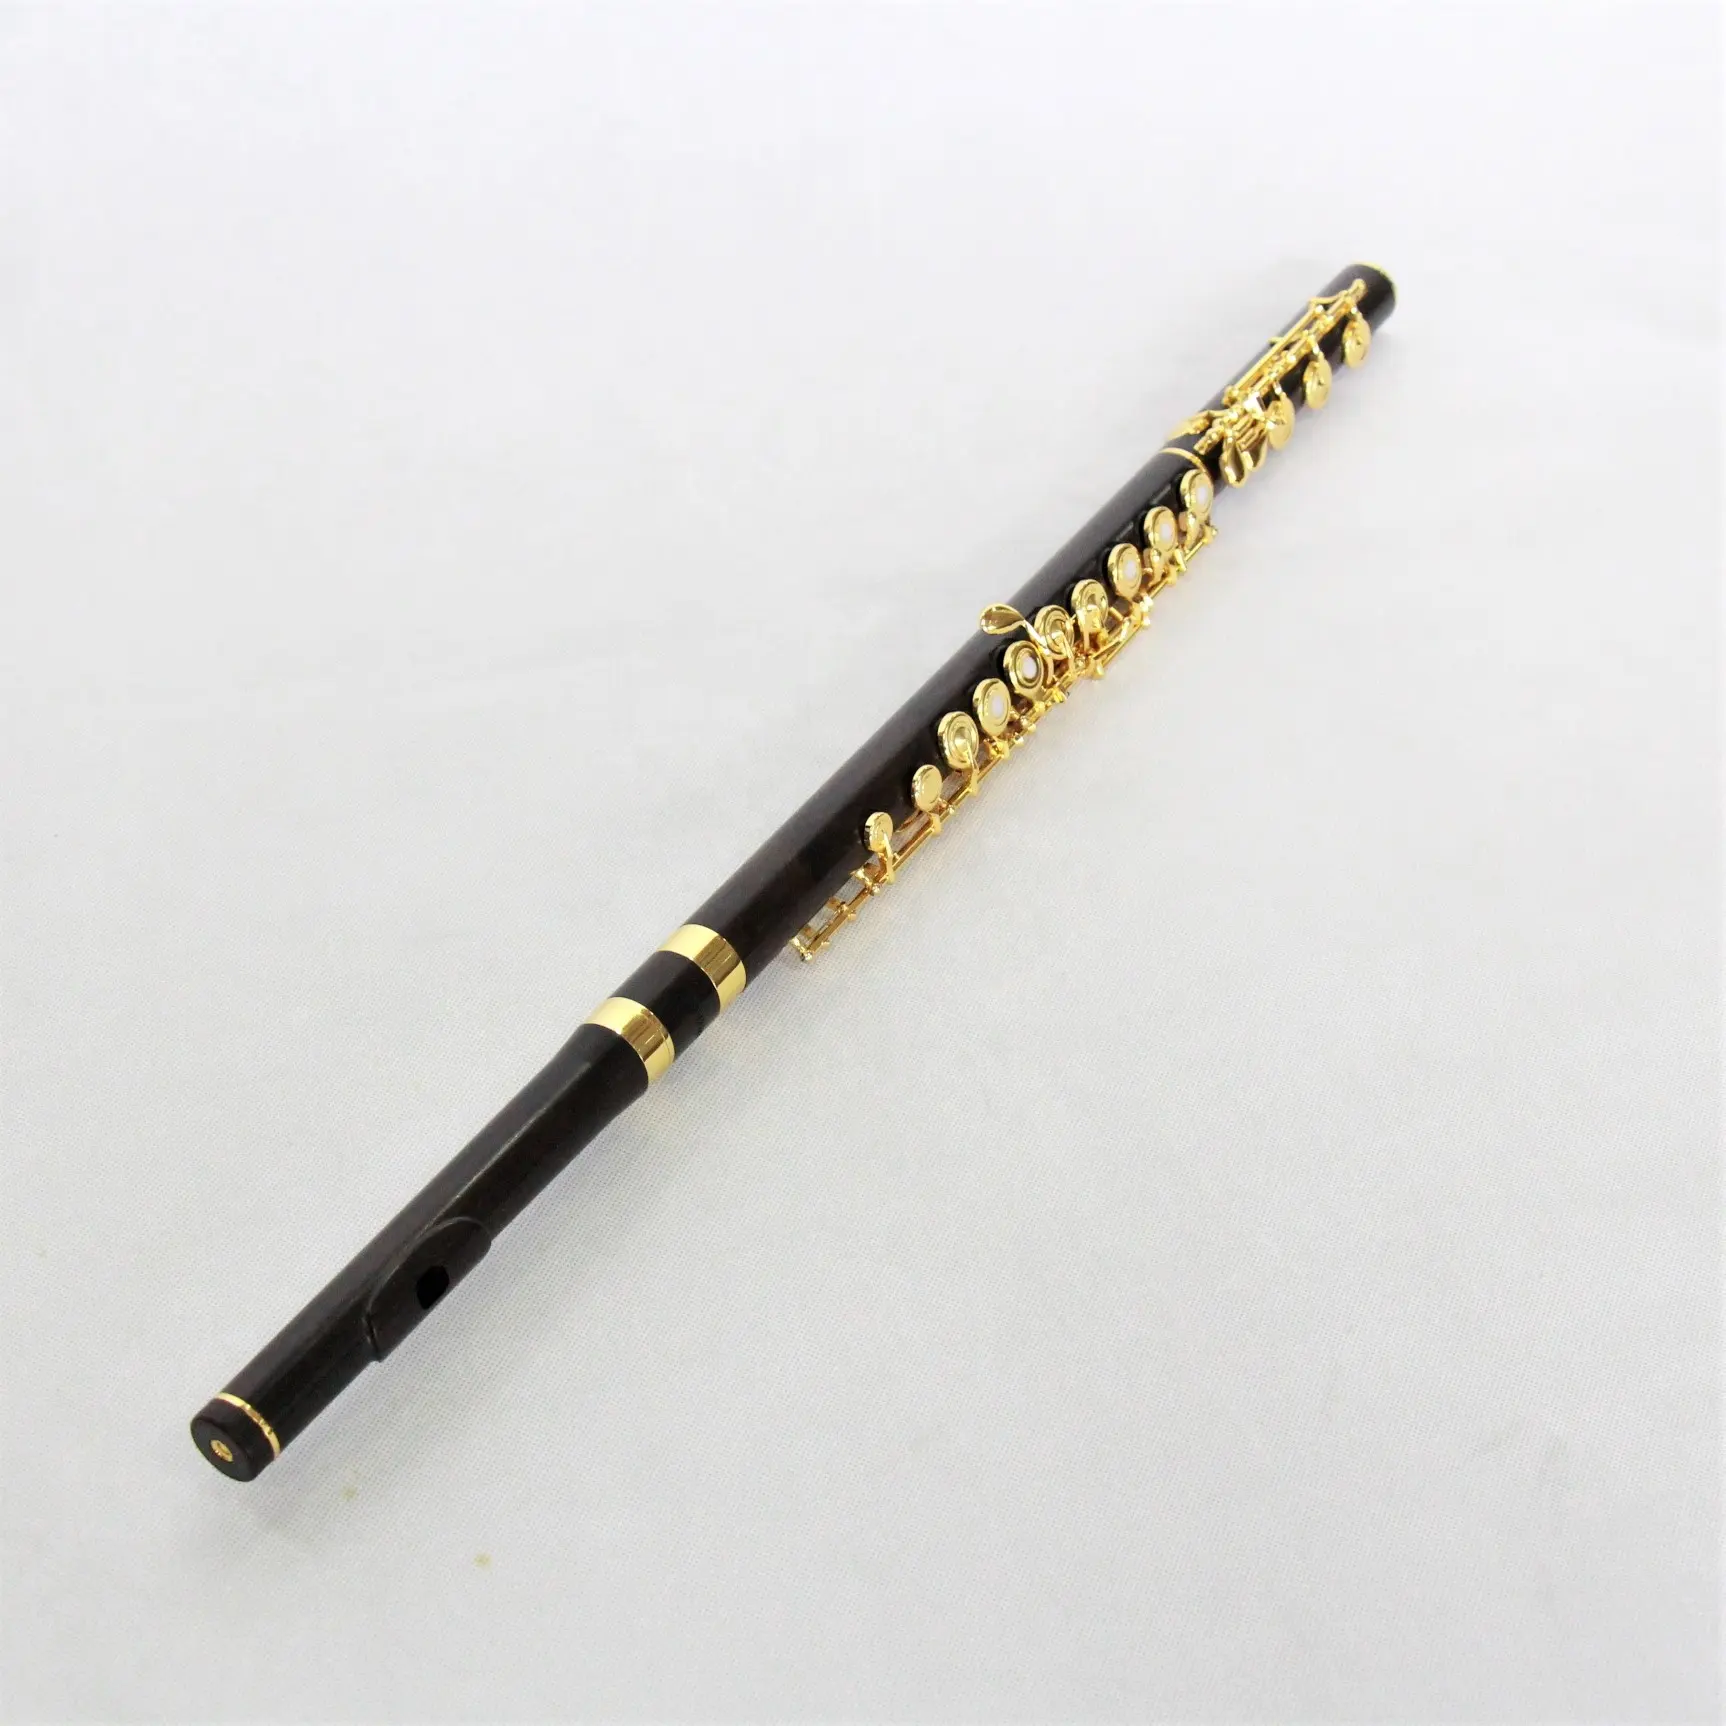 Çin flüt yüksek dereceli flüt müzik enstrümanı altın kaplama abanoz flüt